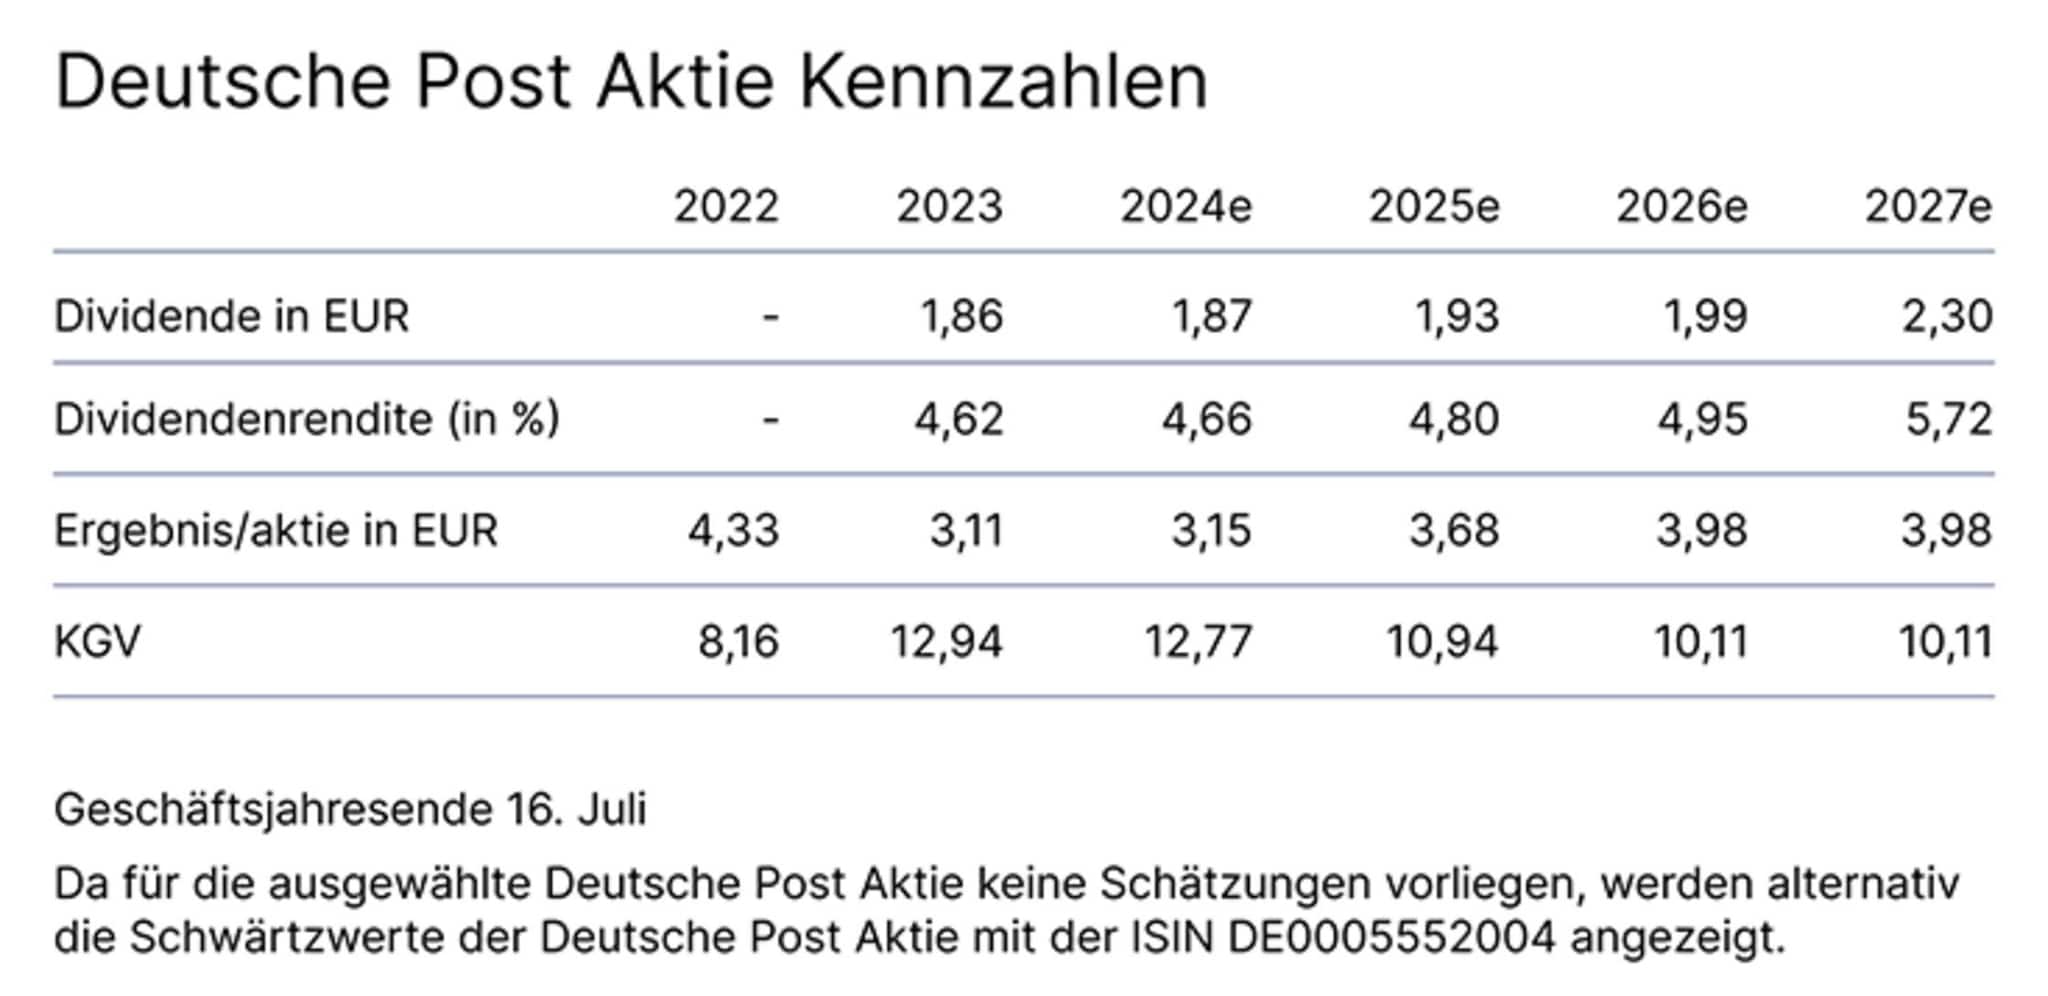 10087 Deutsche Post Aktie Kennzahlen_734